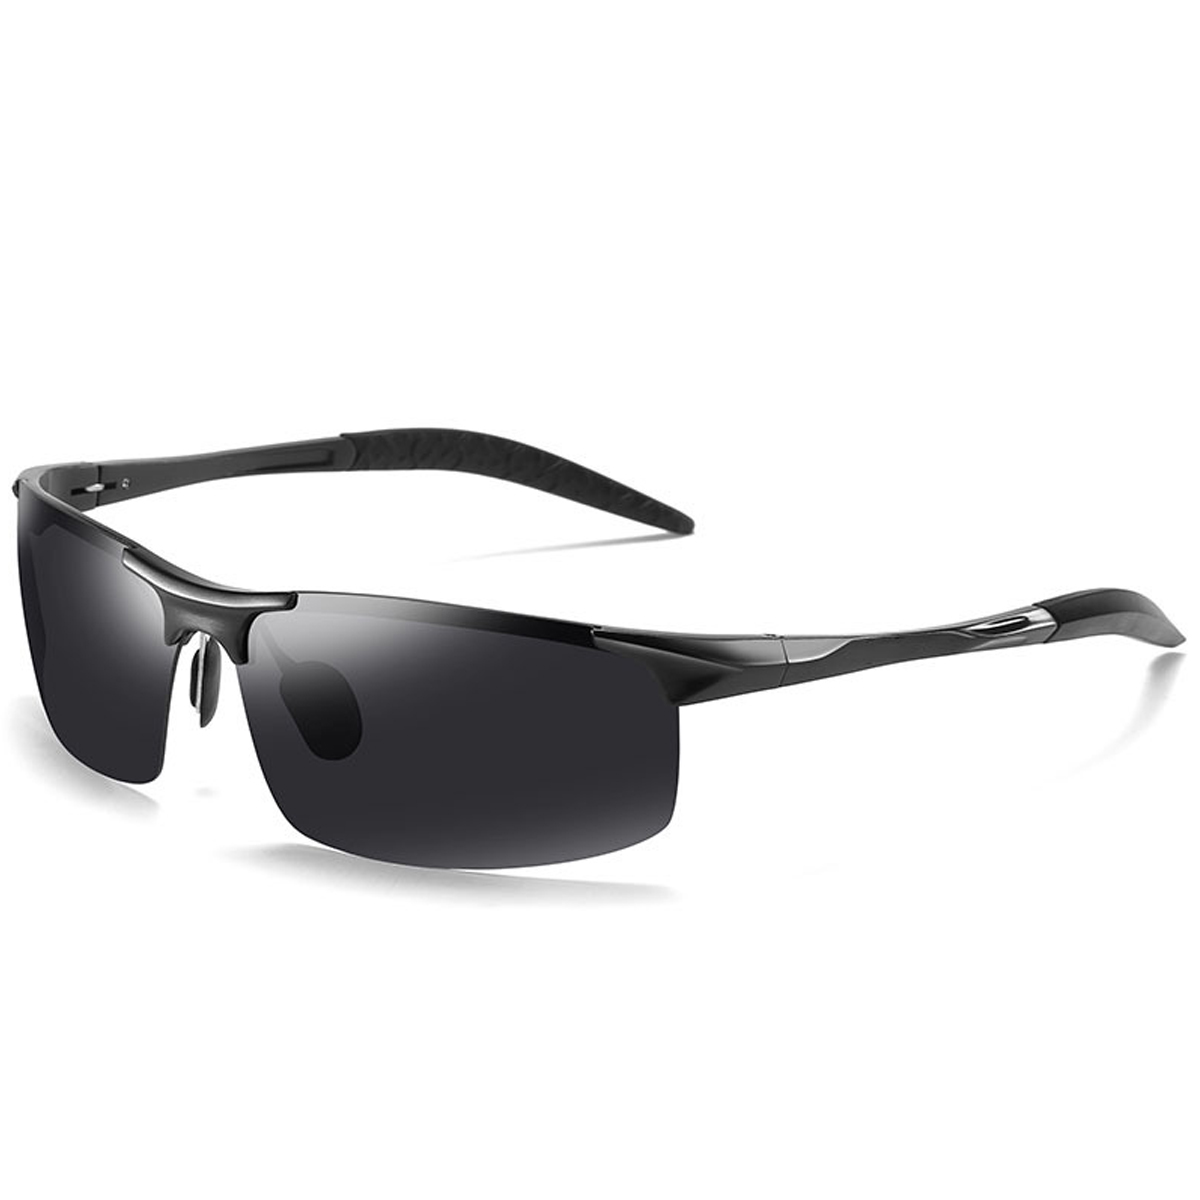 偏光 スポーツサングラス メンズ用 TAC偏光レンズ 軽量24g UV99%カット 偏光サングラス 眼鏡 スポーツ 通勤 運動 野外活動 アウトドア  キャンプ